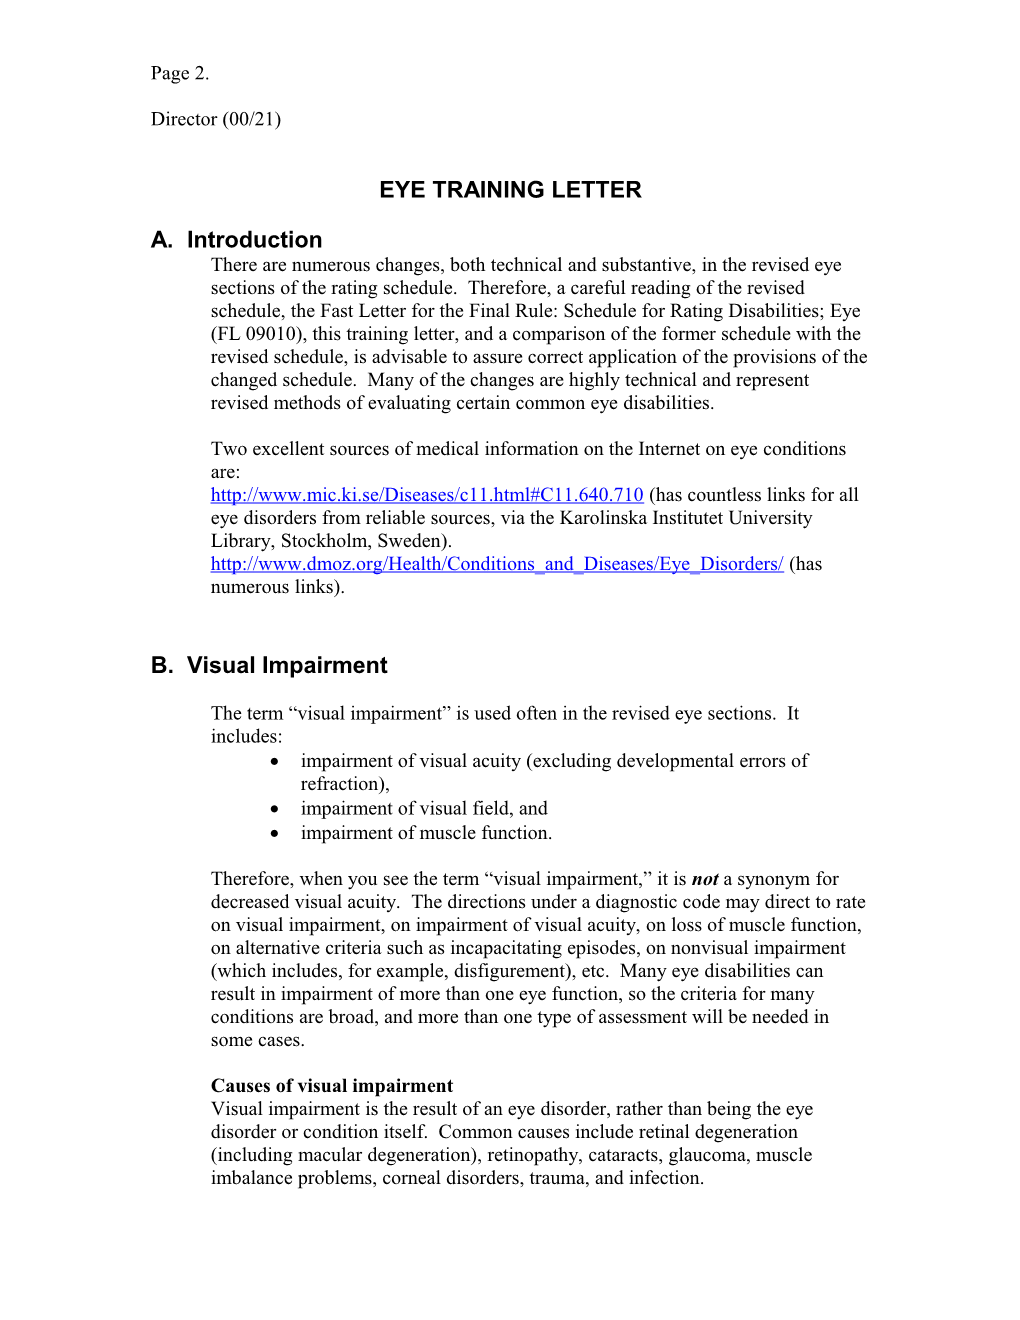 Eye Training Letter